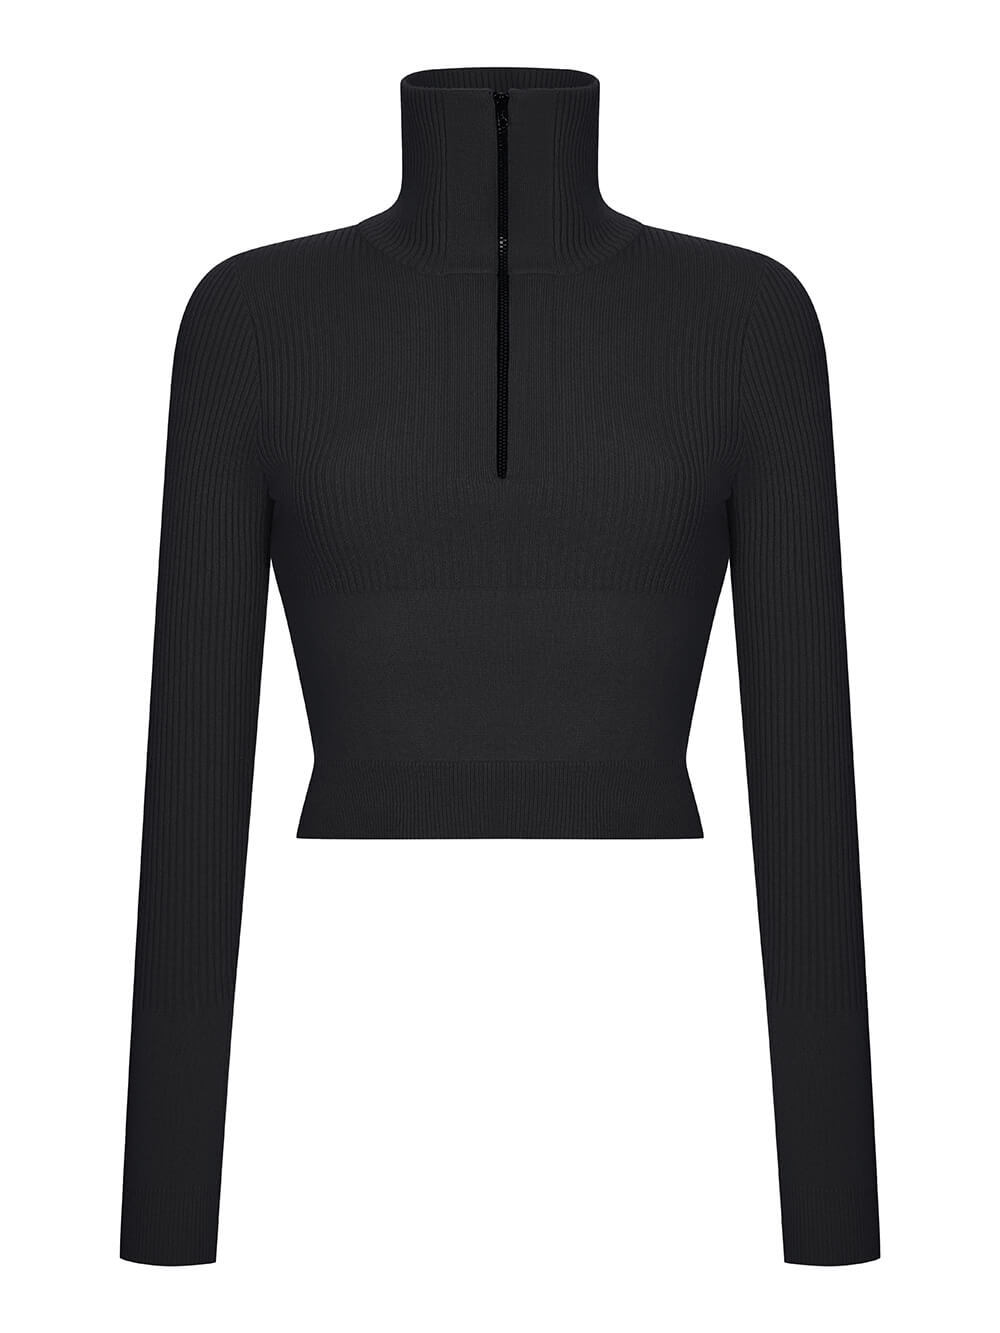 Женский свитер черного цвета из шерсти и кашемира